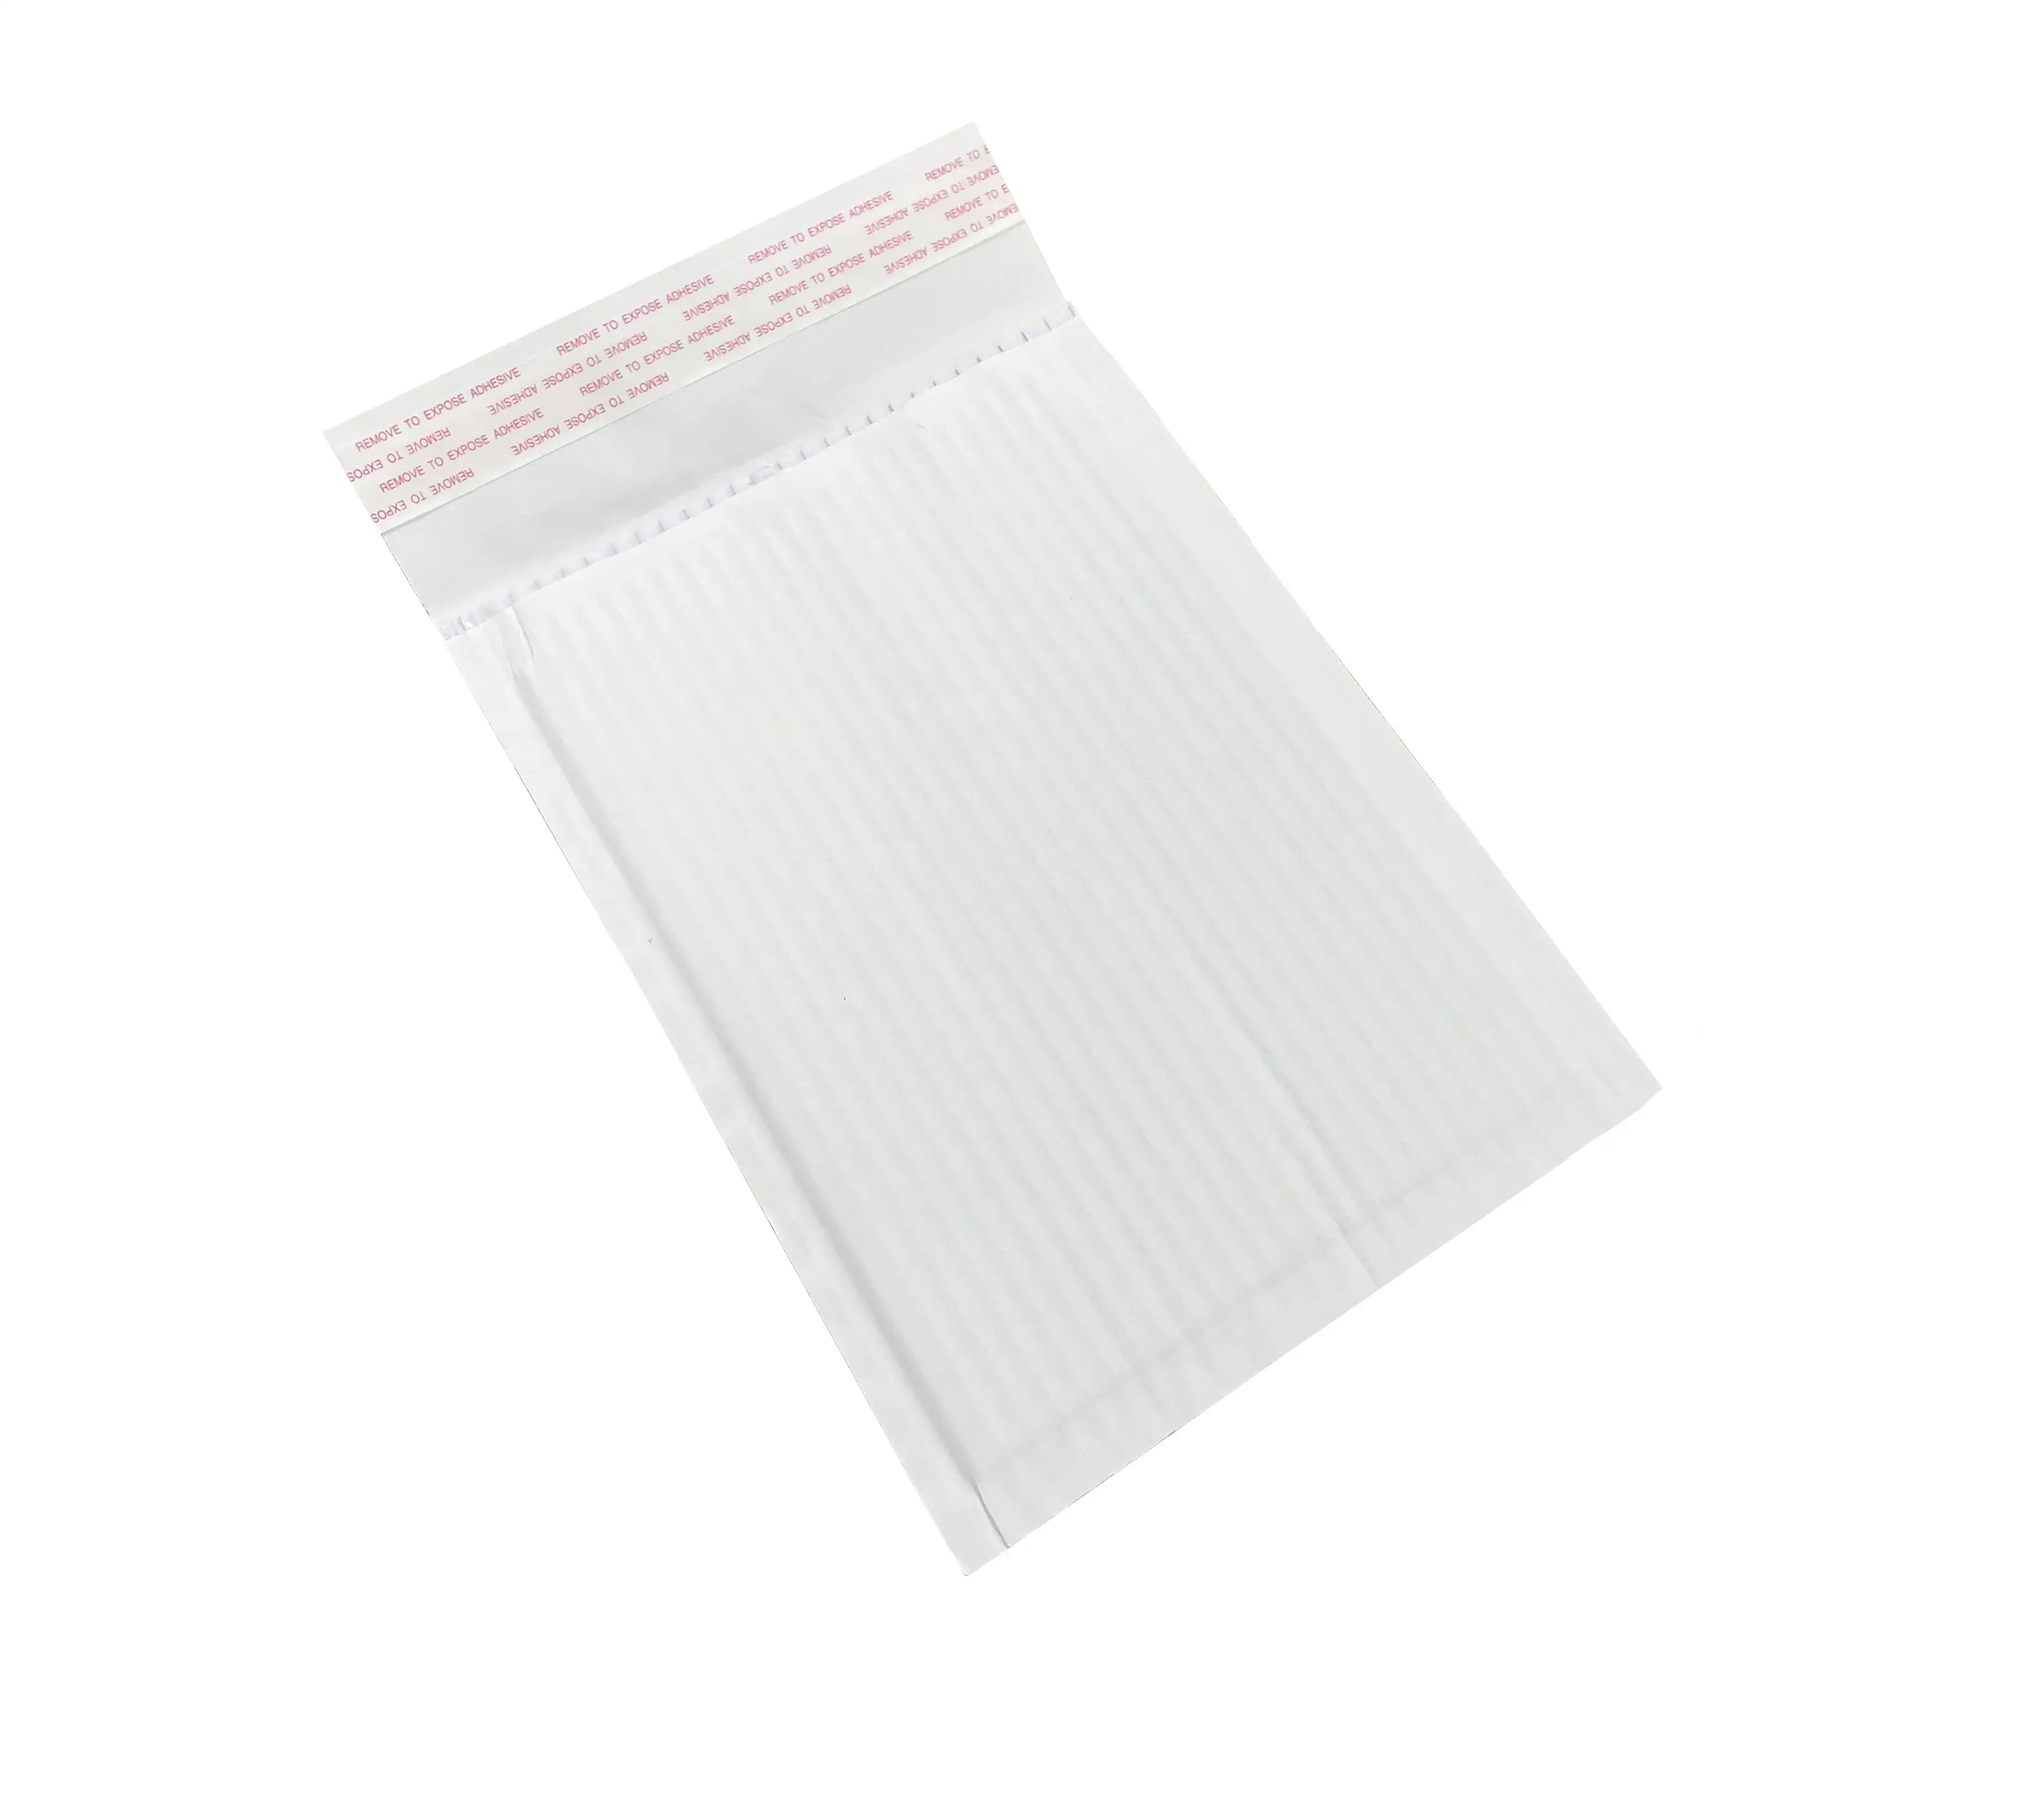 Geami black tissue paper, Packaging2Buy